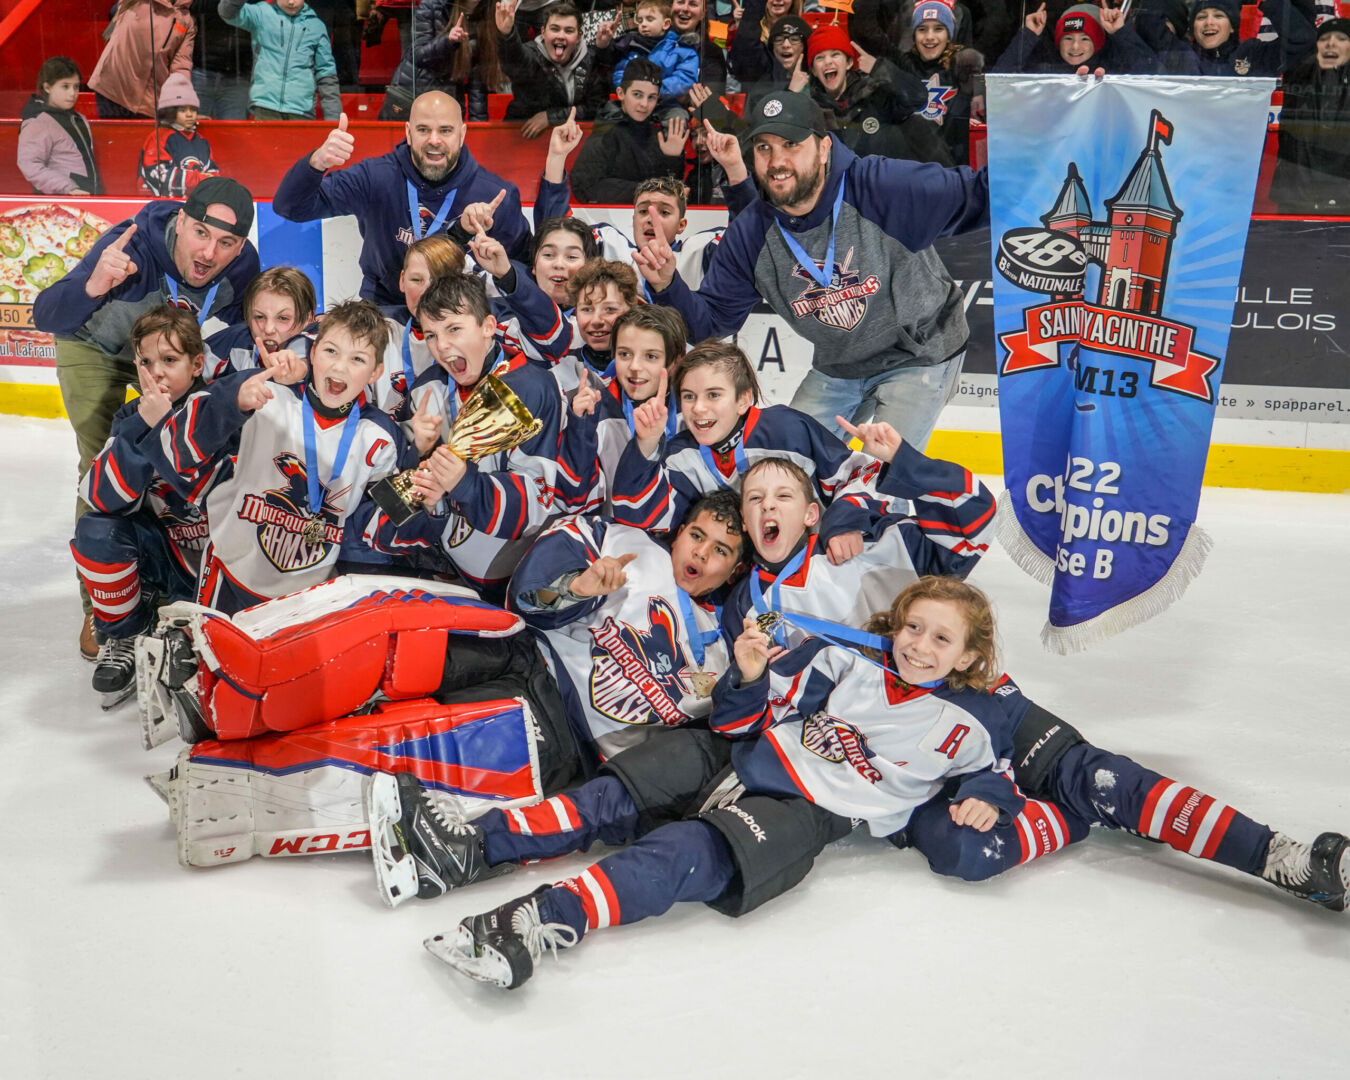 Les Mousquetaires 2 ont remporté le titre de la classe B au Tournoi national de hockey M13 de Saint-Hyacinthe, dimanche. Photo François Larivière | Le Courrier ©